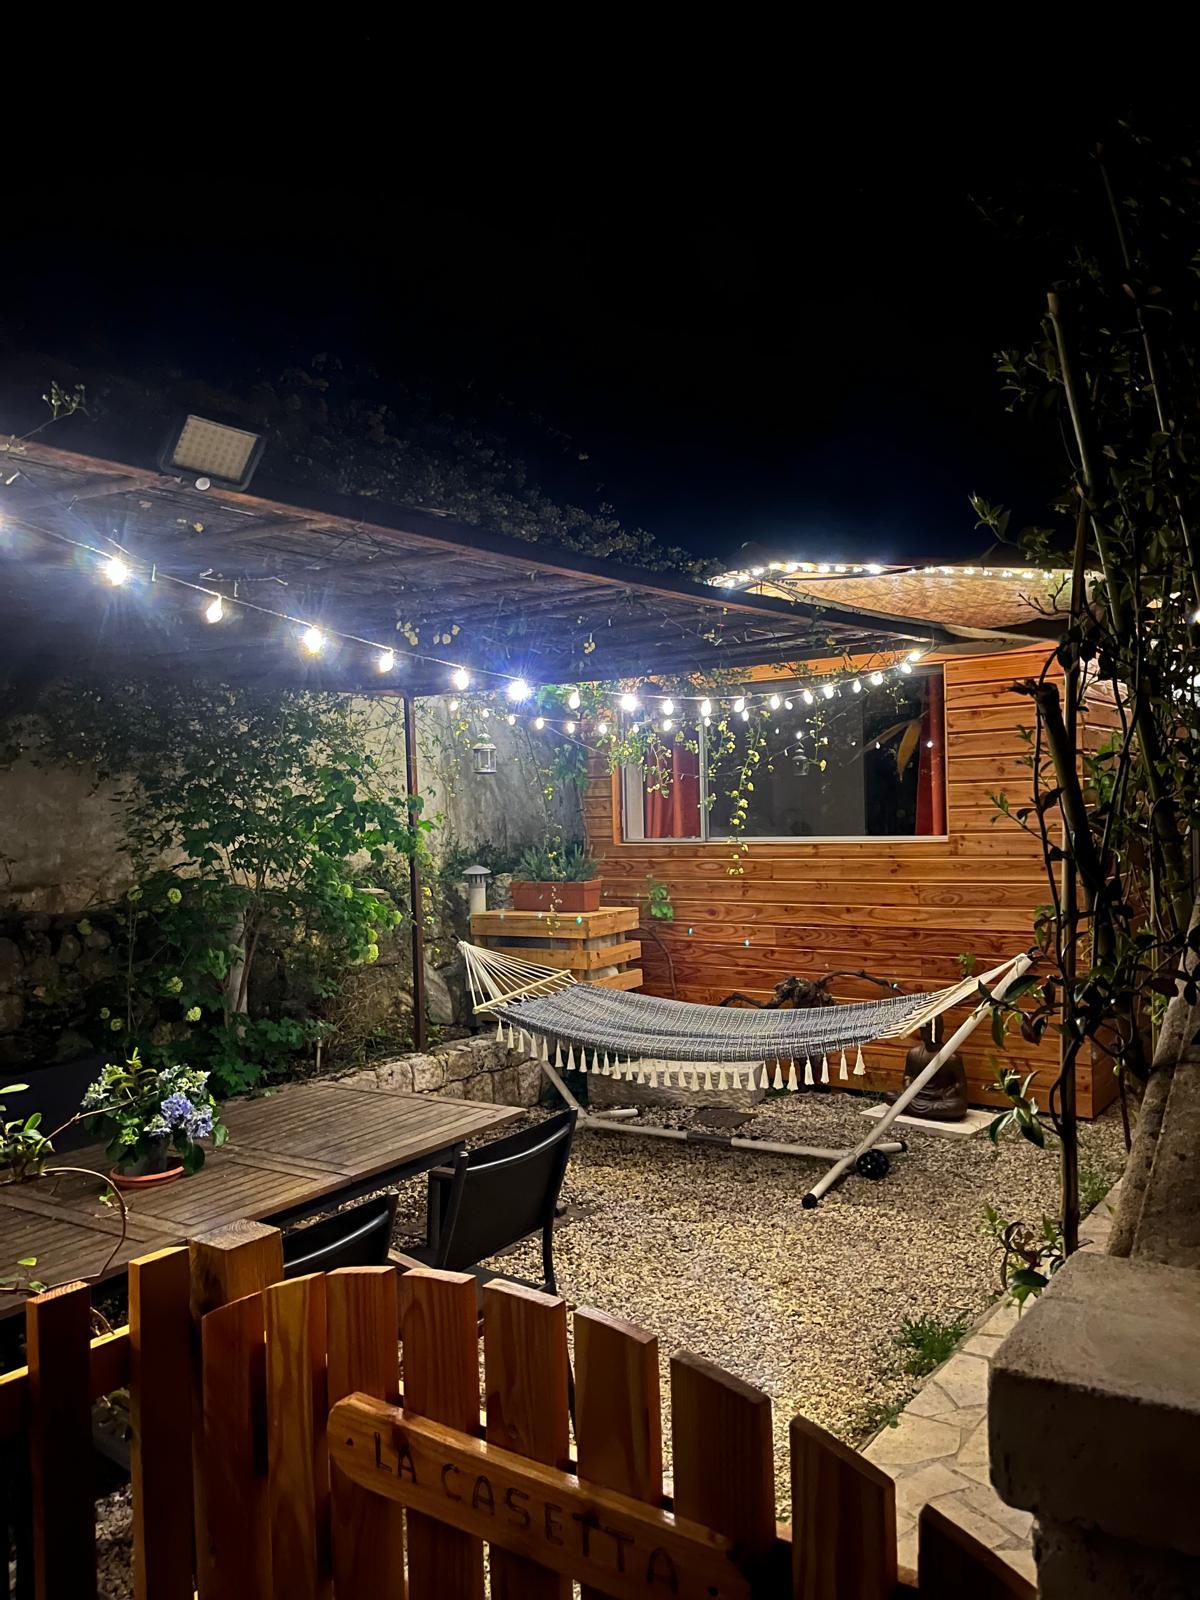 Logement GreenGo: "La Casetta" Charmant bungalow tout confort - Image 7